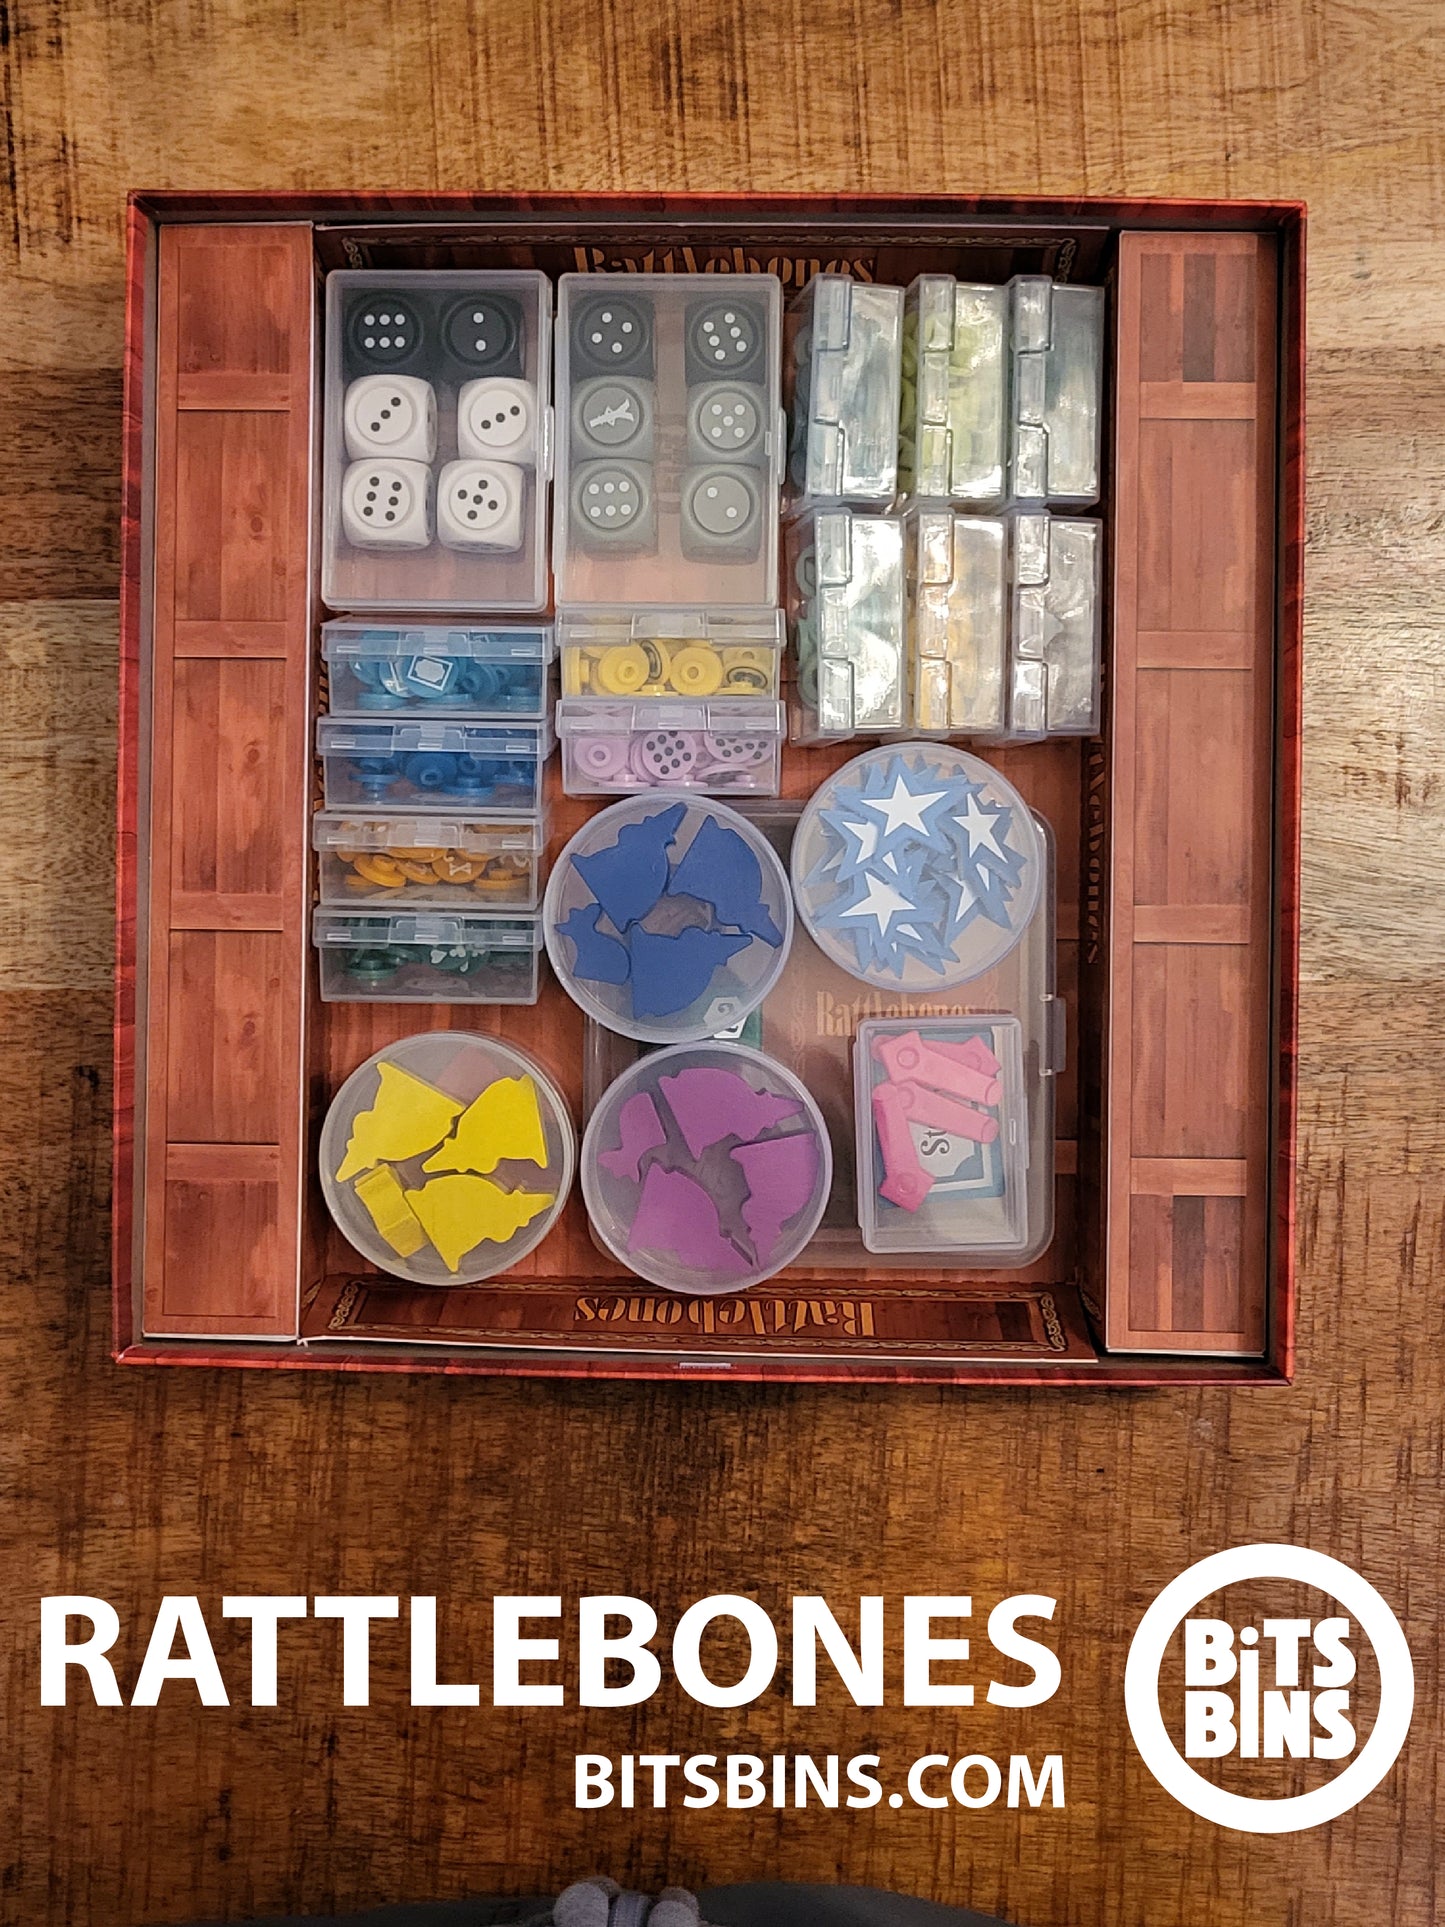 RECOMMENDED Bitsbins Rattlebones - 5 Pods, 13 Minis, 2 Originals, 1 Flat